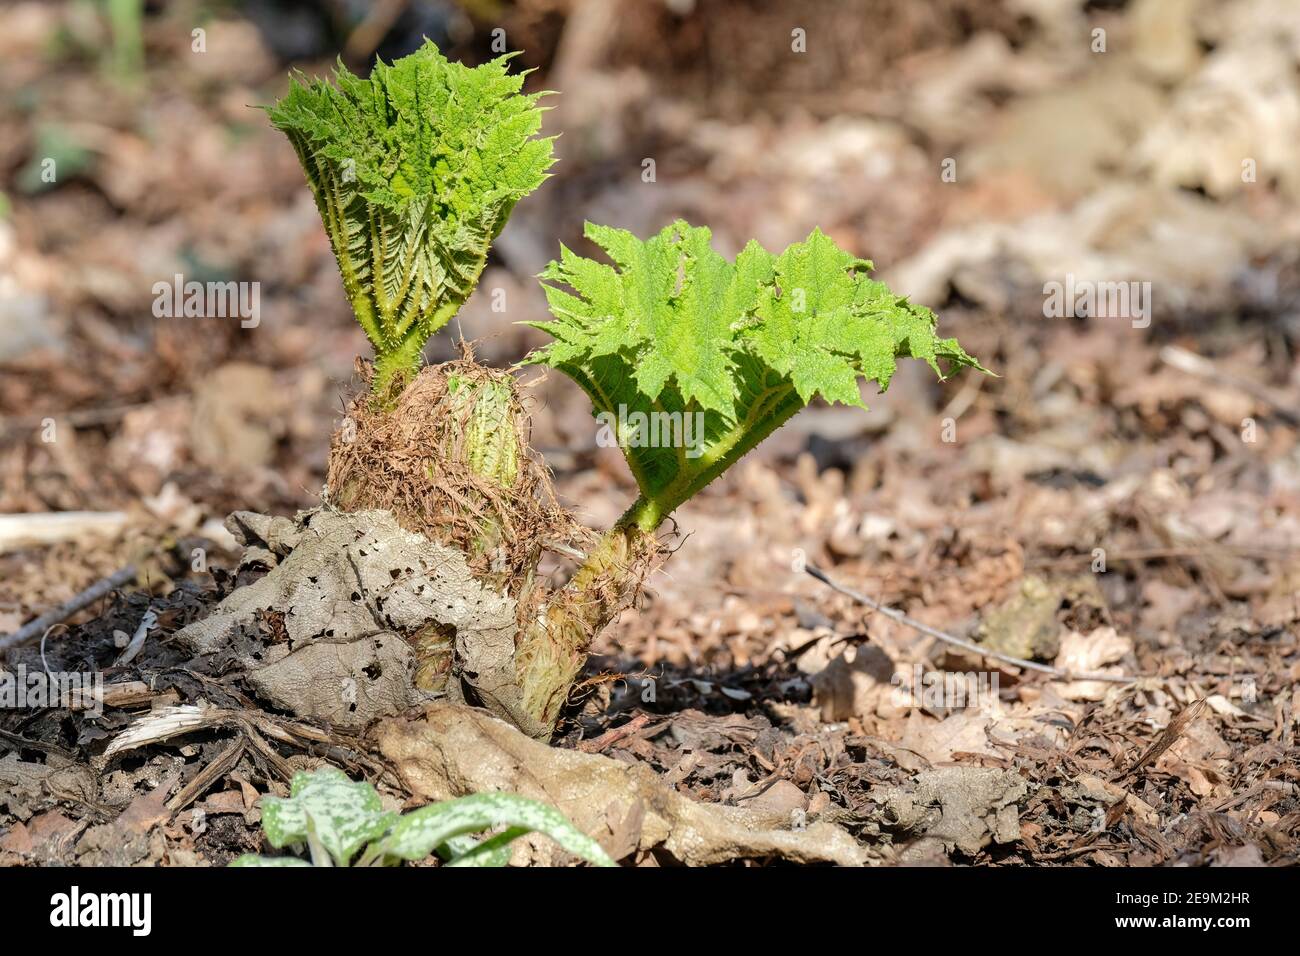 Junge Triebe von Gunnera manicata im Frühjahr, Riese Rhabarber chilenischen Rhabarber. Brasilianischer Riese-Rhabarber, Dinosaurier-Lebensmittel Stockfoto